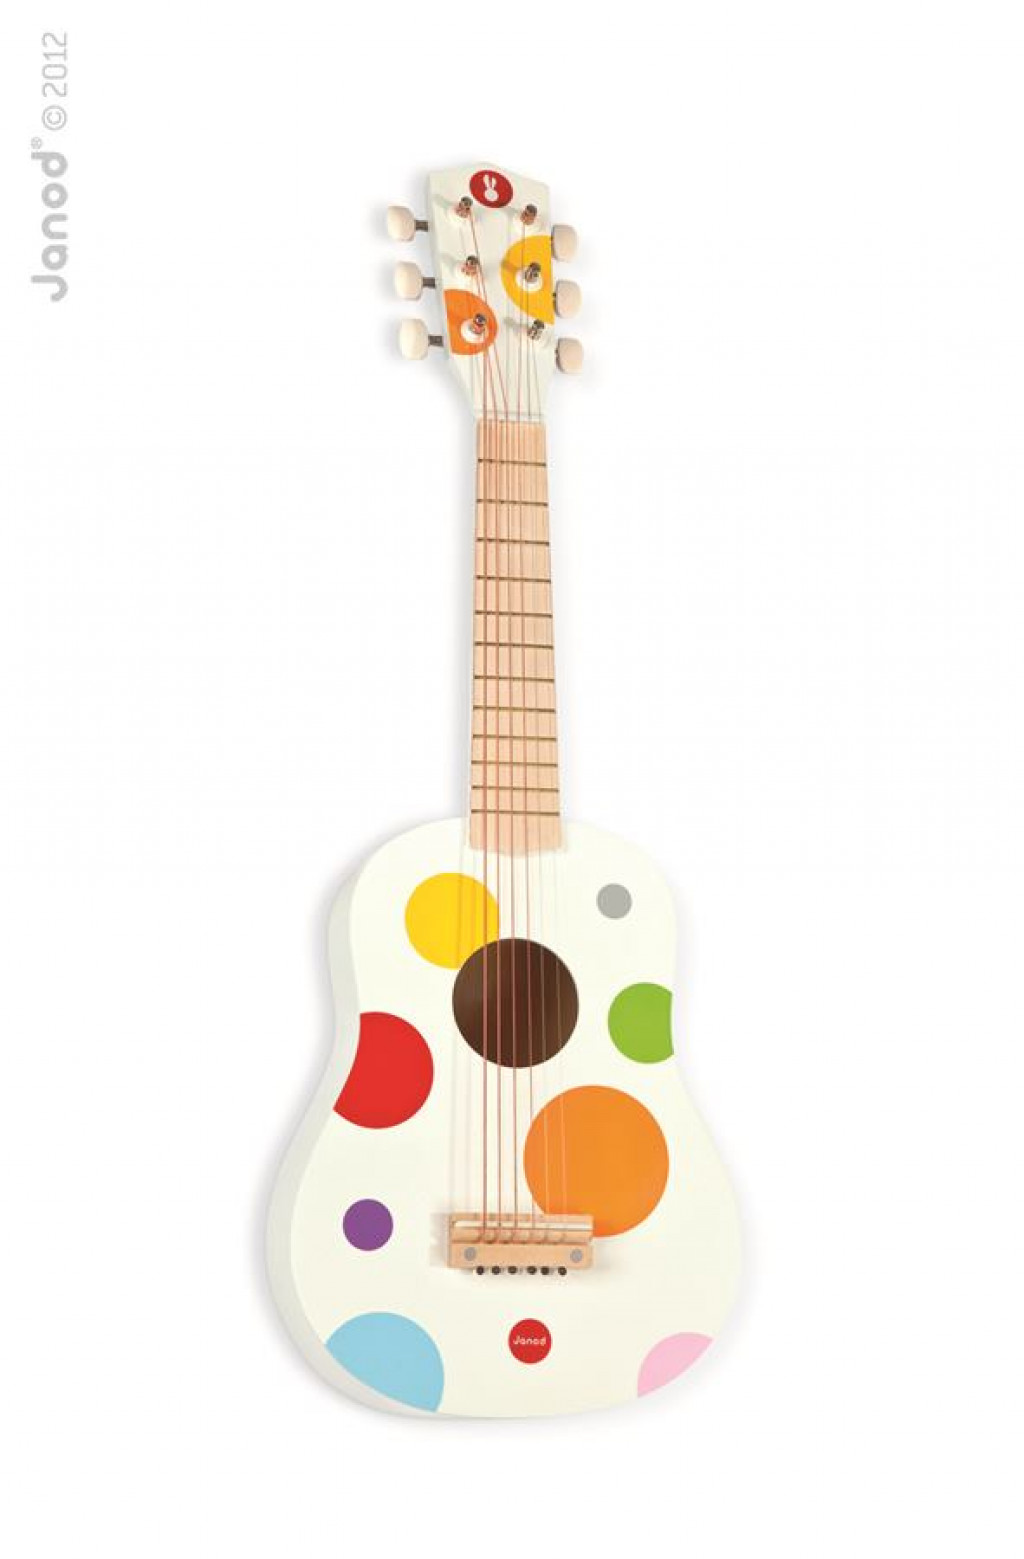 Janod dřevěná první kytara pro děti Confetti s reálnym zvukem 6 strun